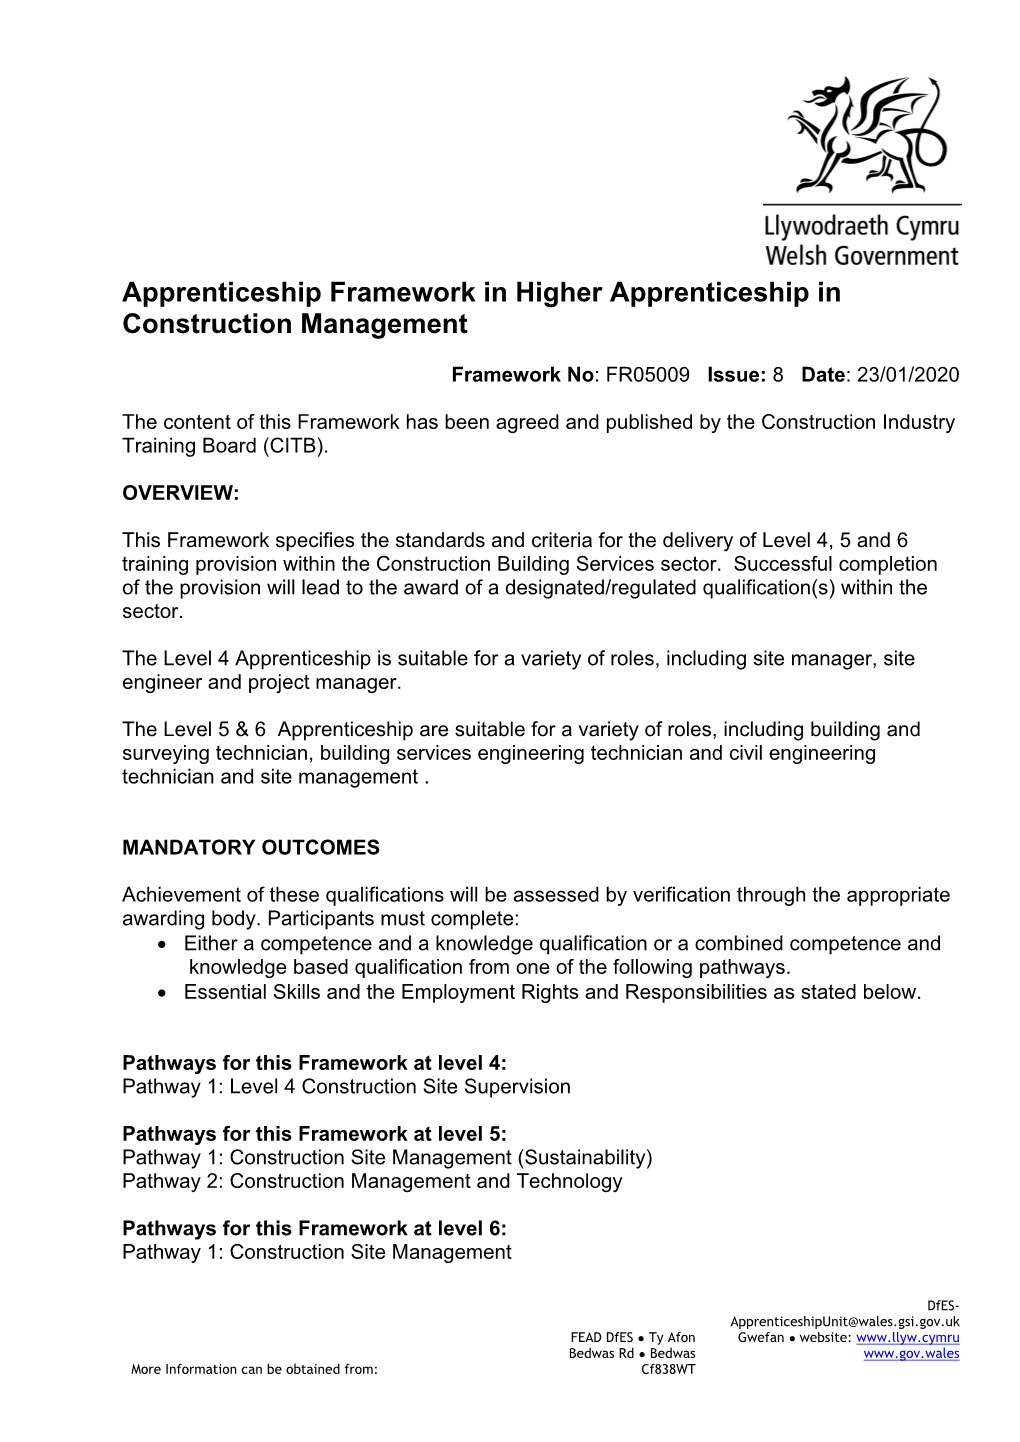 Apprenticeship Framework in Higher Apprenticeship in Construction Management